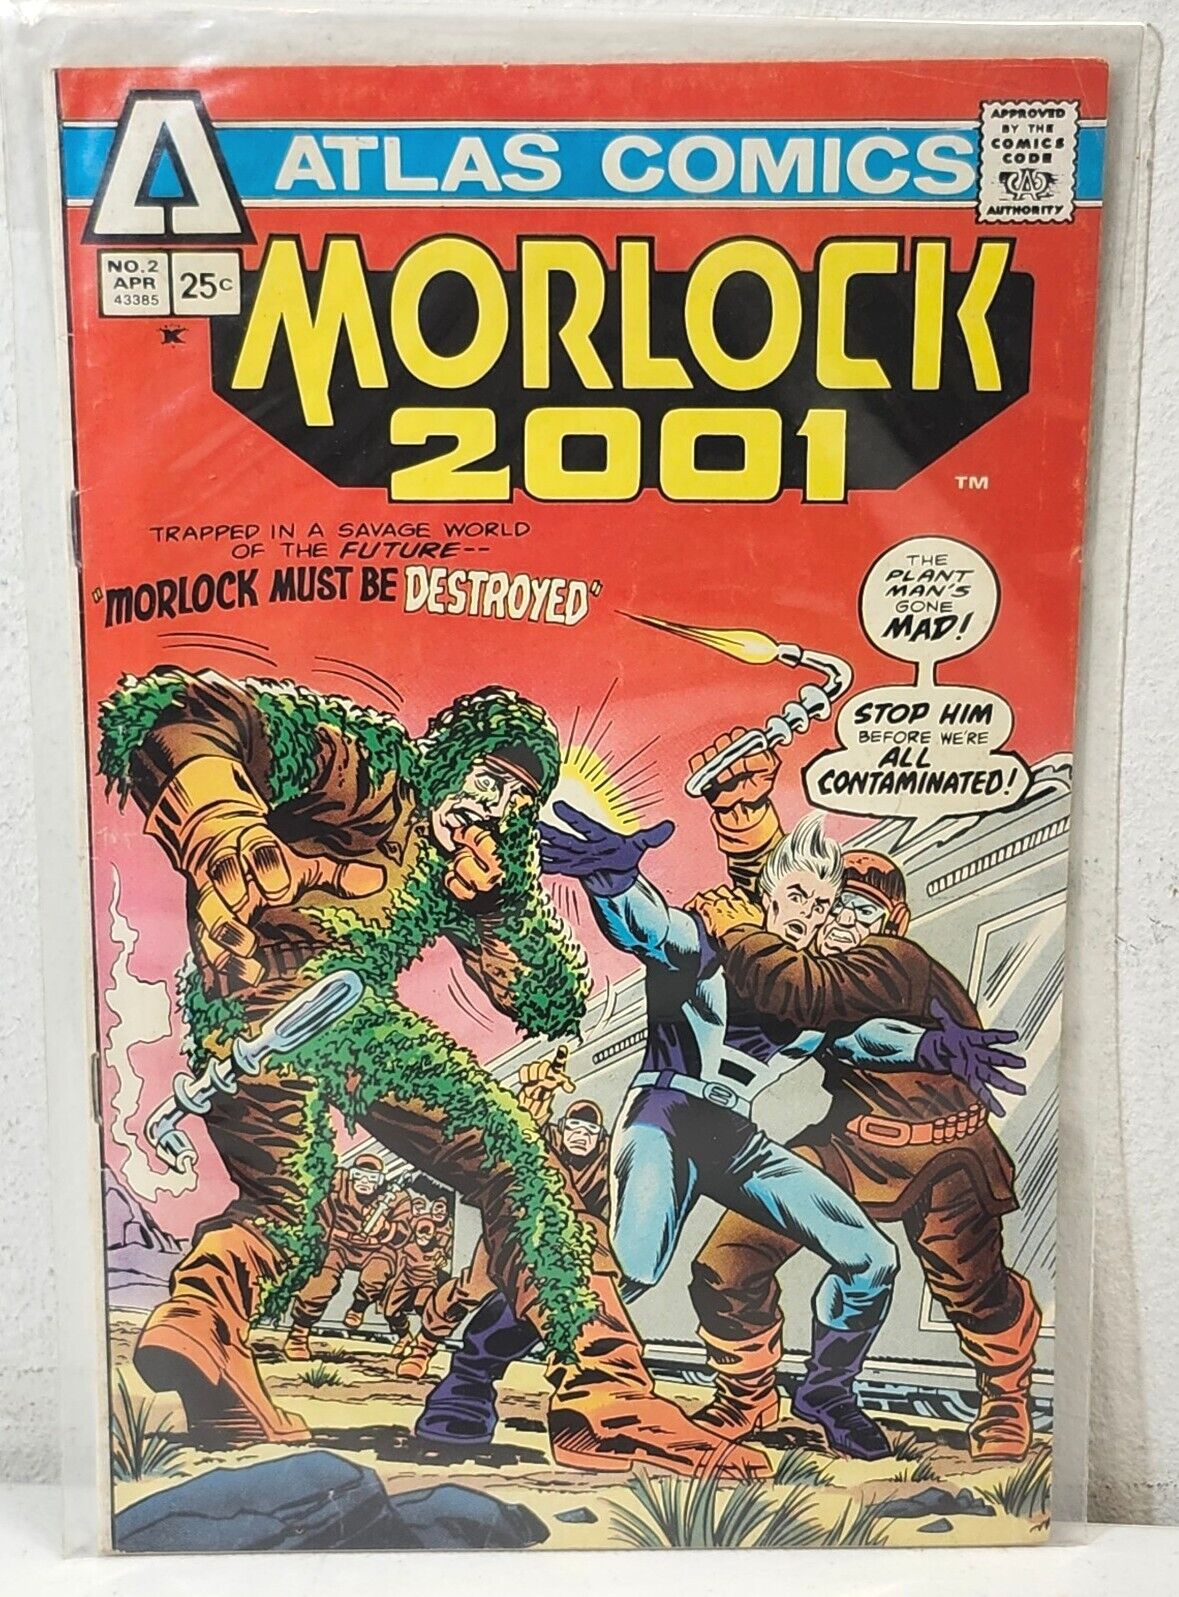 Morlock 2001 #2 Book 1975 Atlas Comics